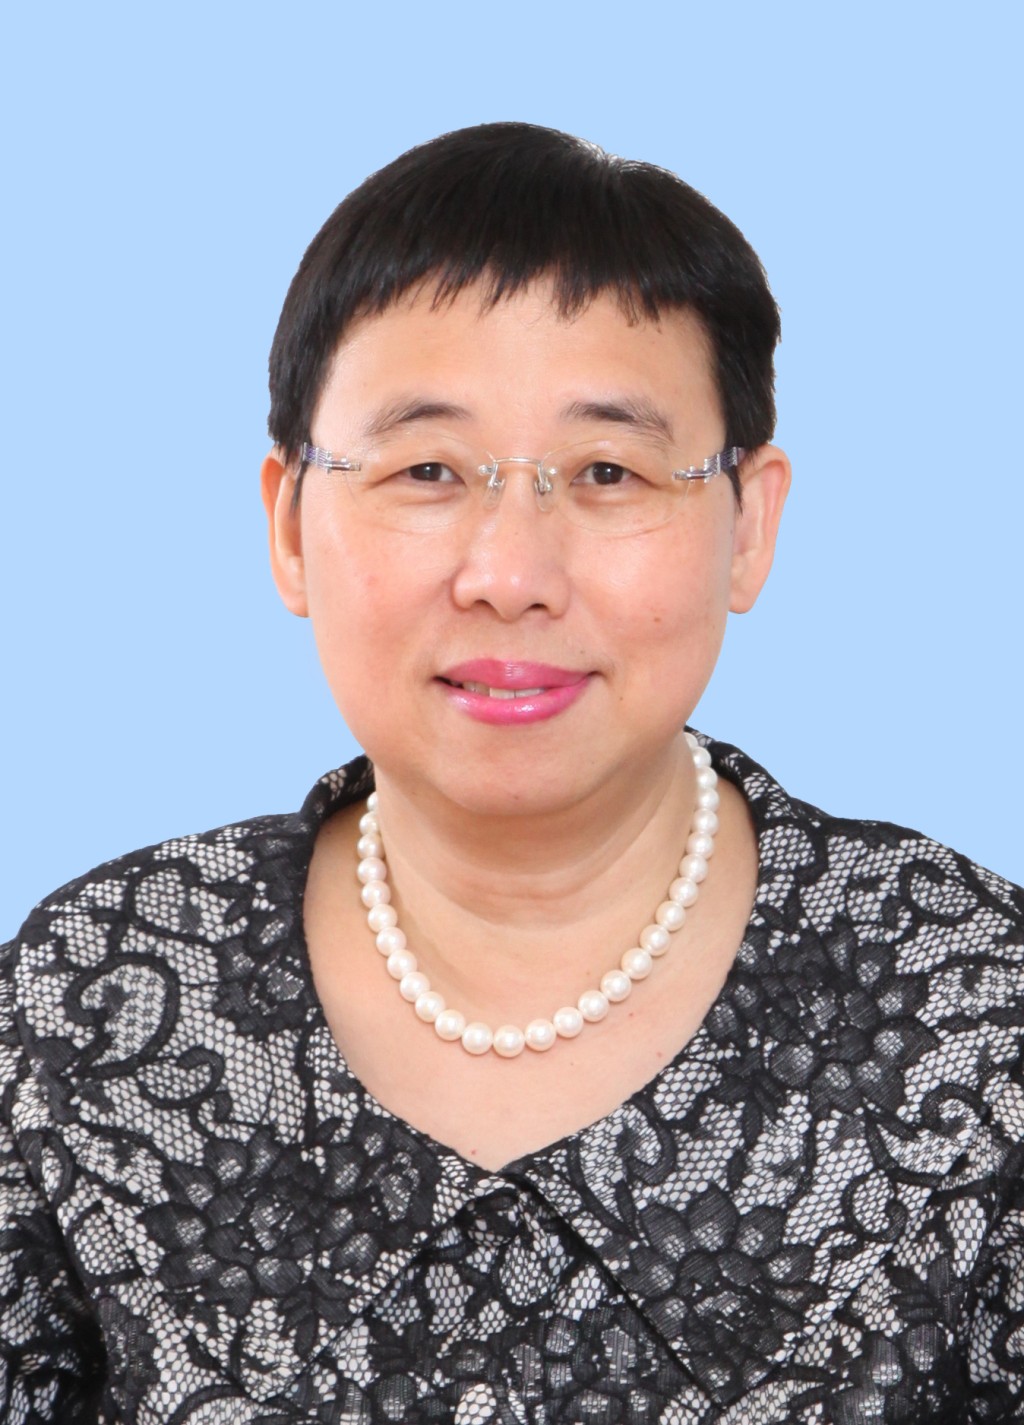 商务及经济发展局常任秘书长利敏贞将于7月开始退休前休假。